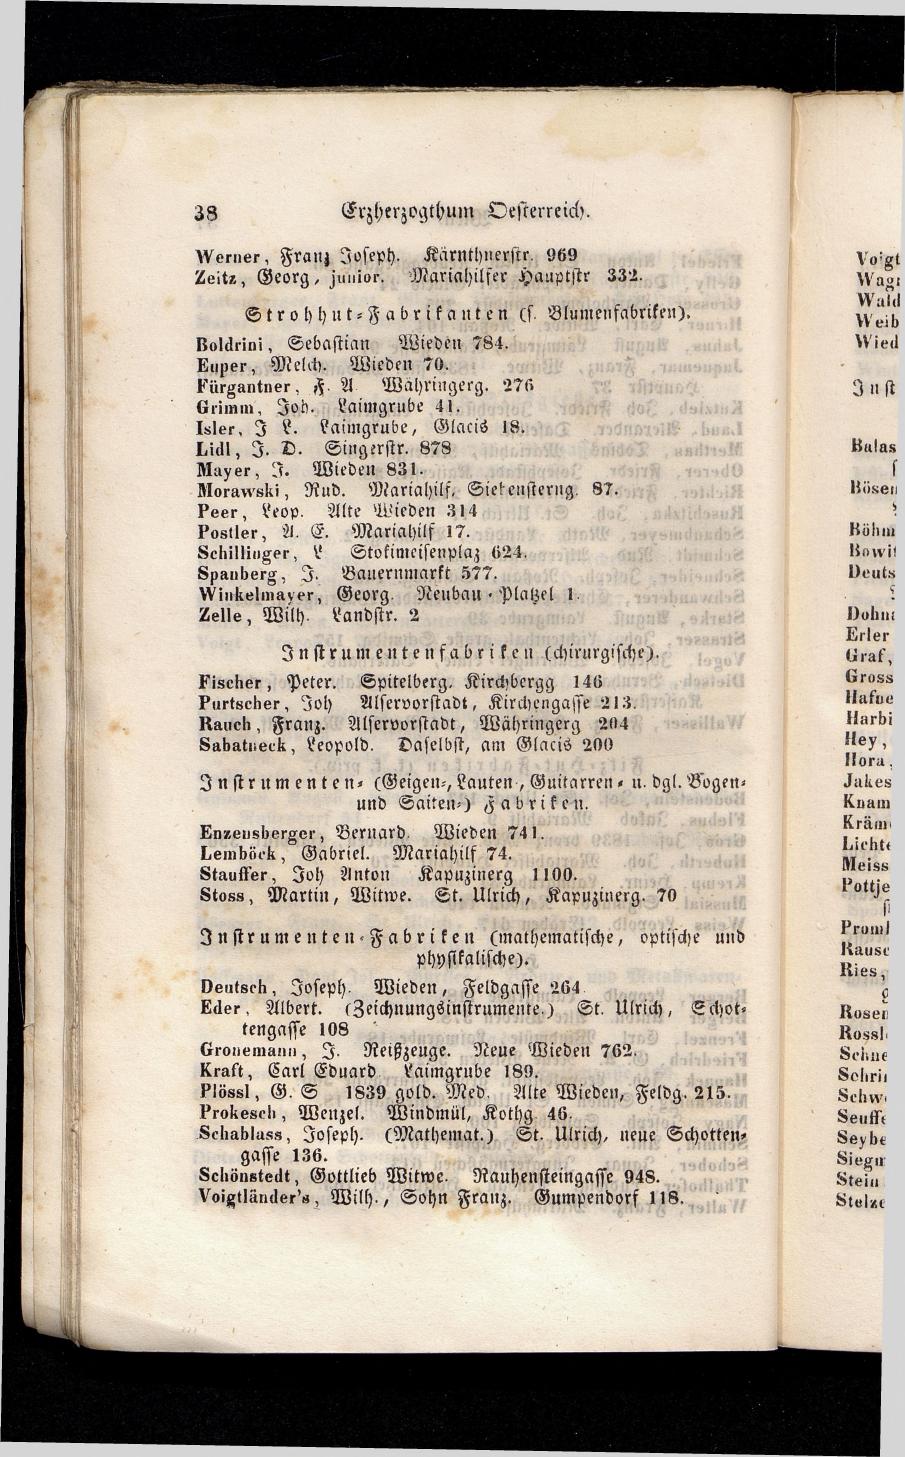 Grosses Adressbuch der Kaufleute. No. 13. Oesterreich ober u. unter der Enns 1844 - Seite 42